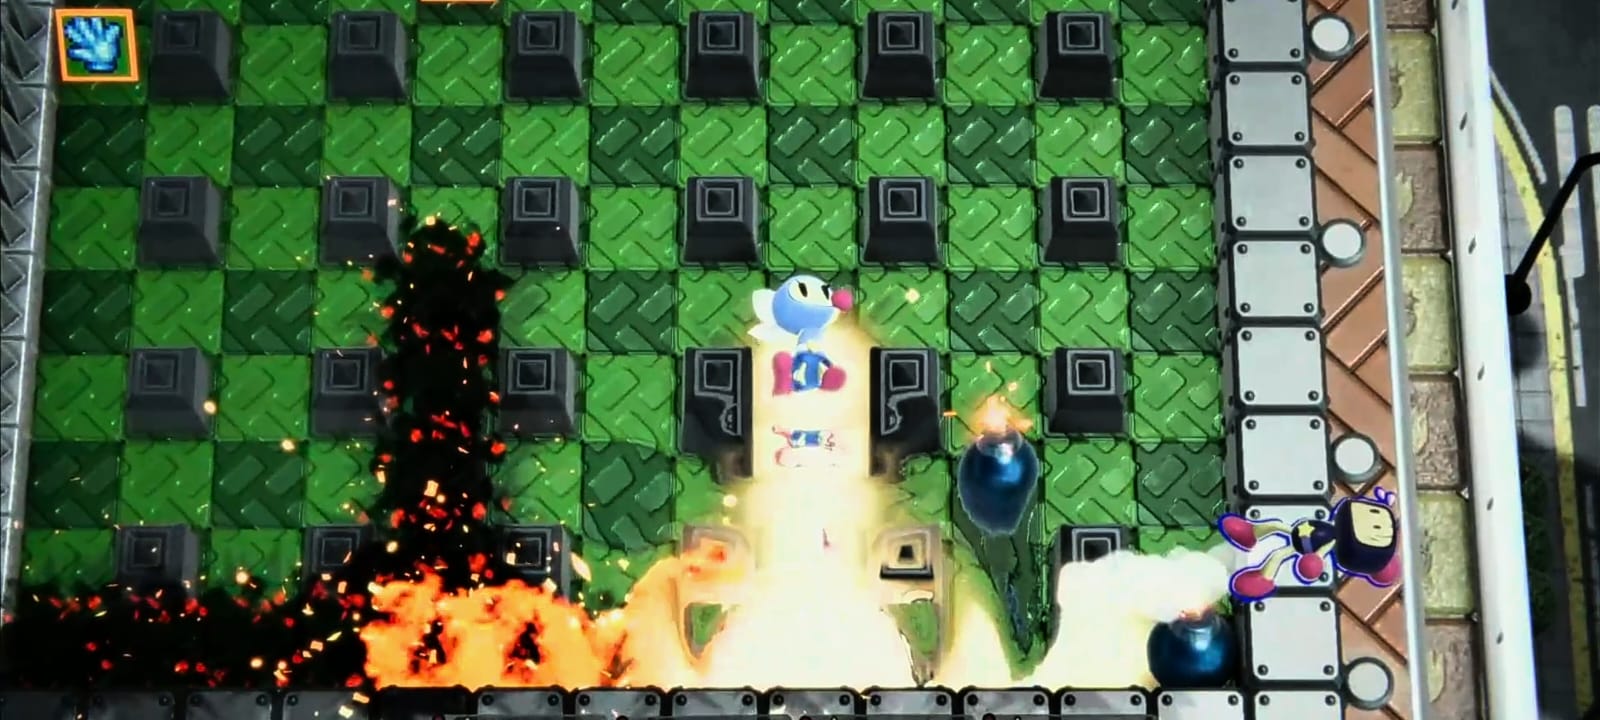 Reseña: Super Bomberman R2, un regreso explosivo de la franquicia 14